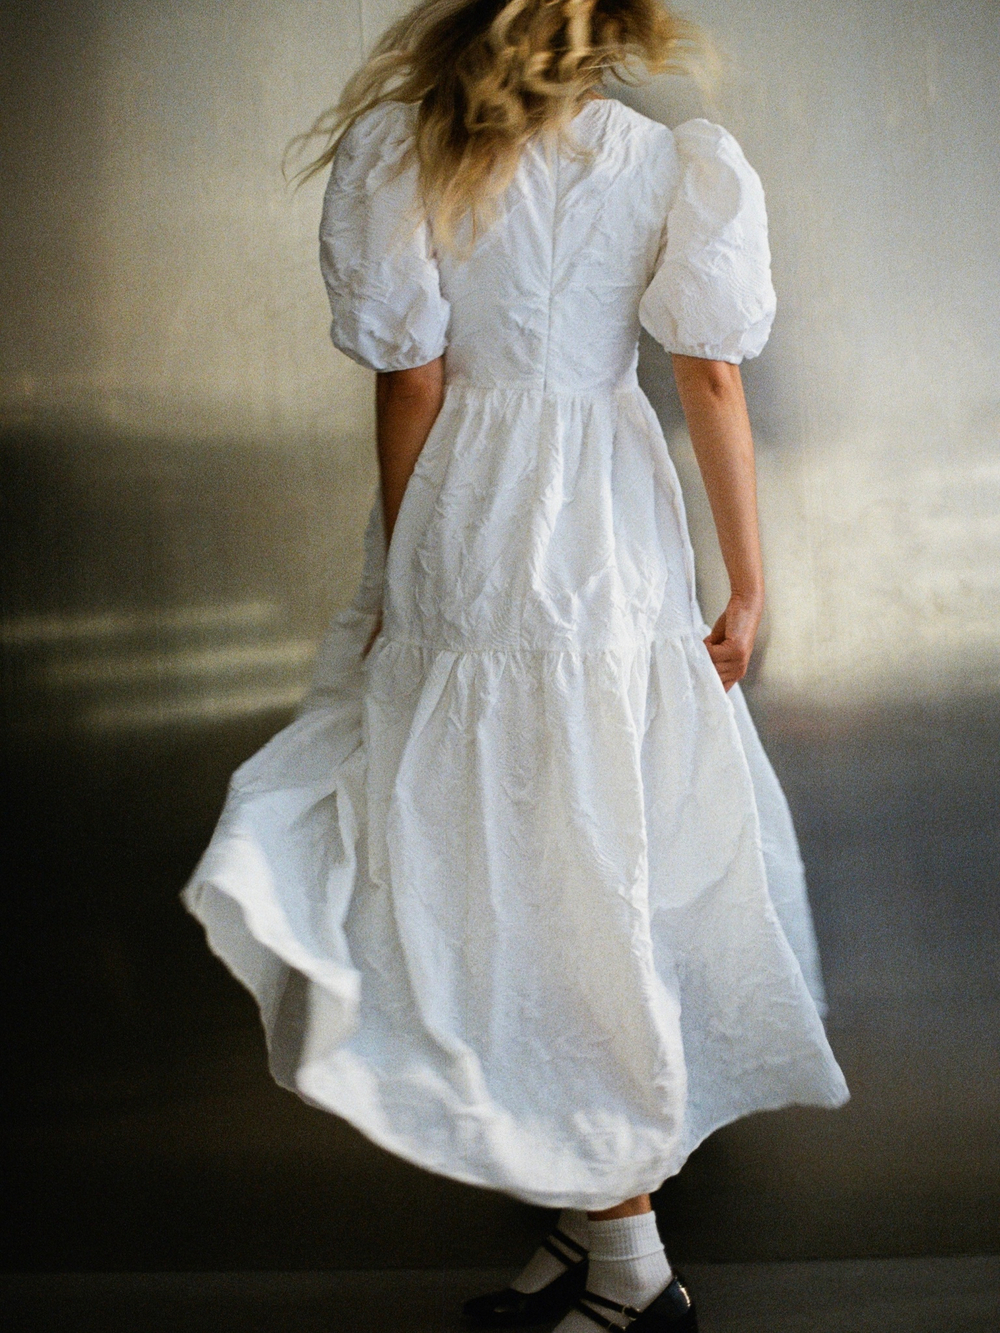 Coco white dress